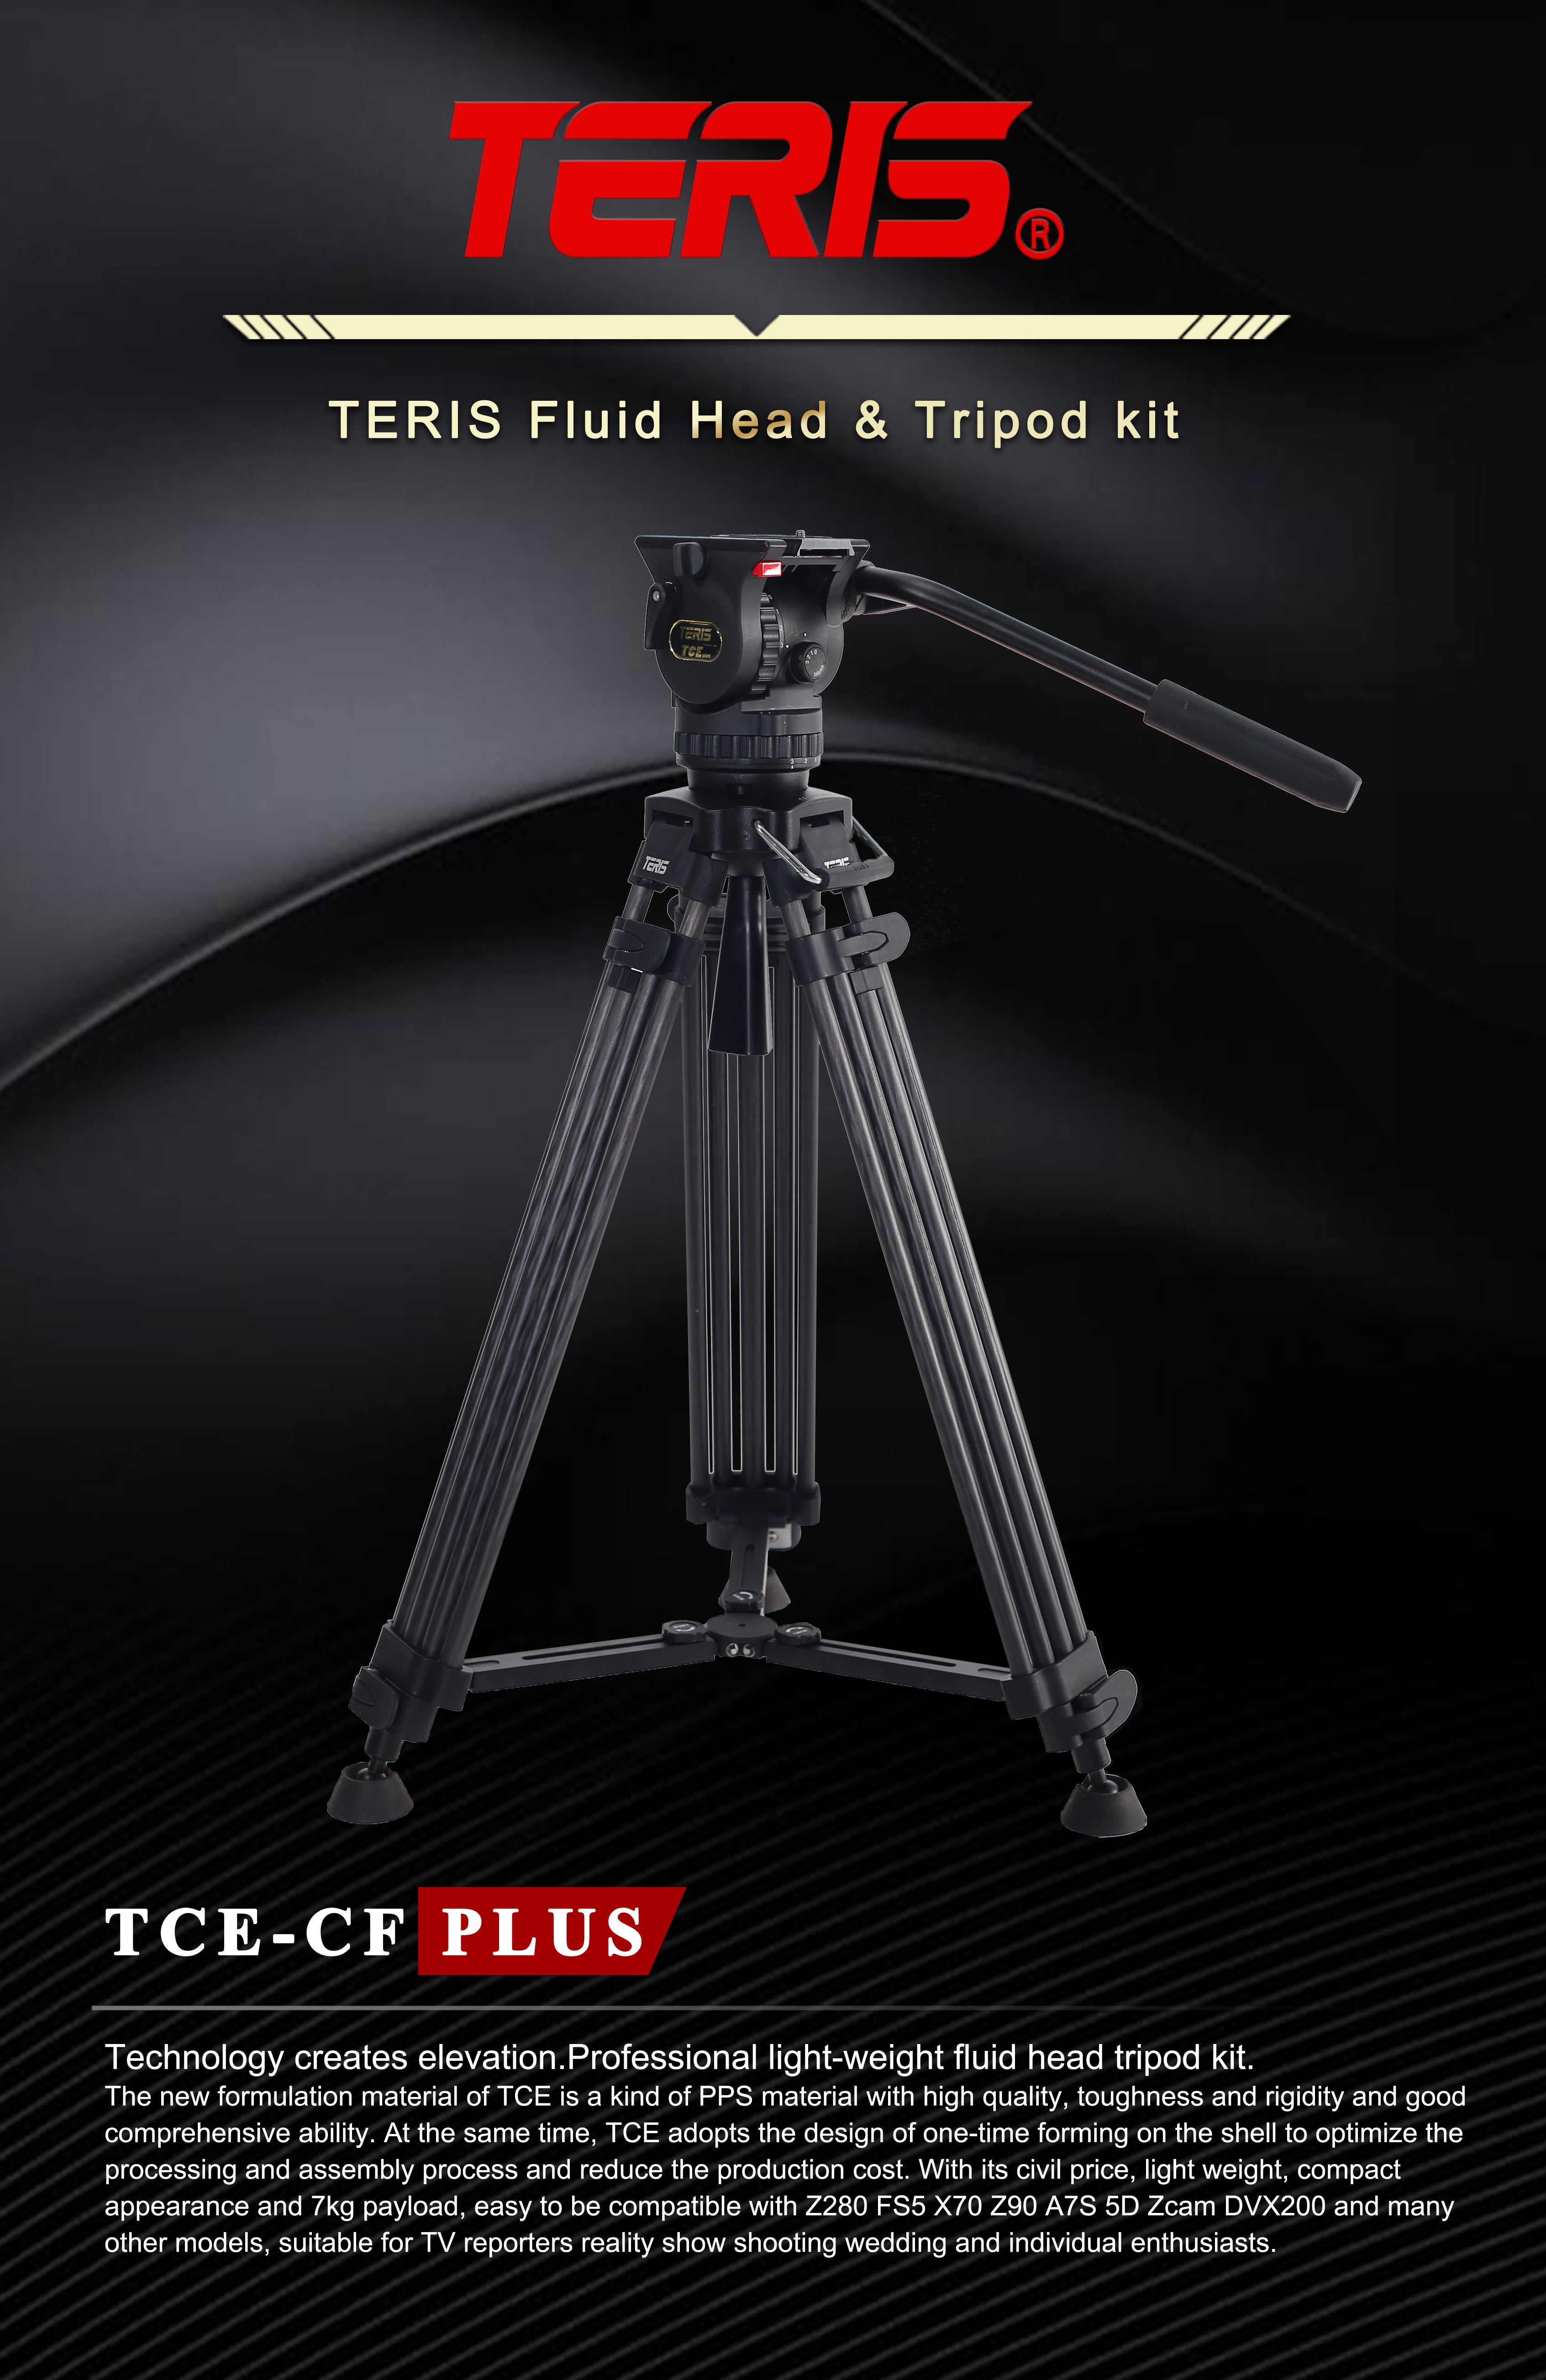 Teris TCE-CF PLUS Carbon Fiber Tripod Kit 7kg (15lb) Capacity 75mm Bowl Head 1